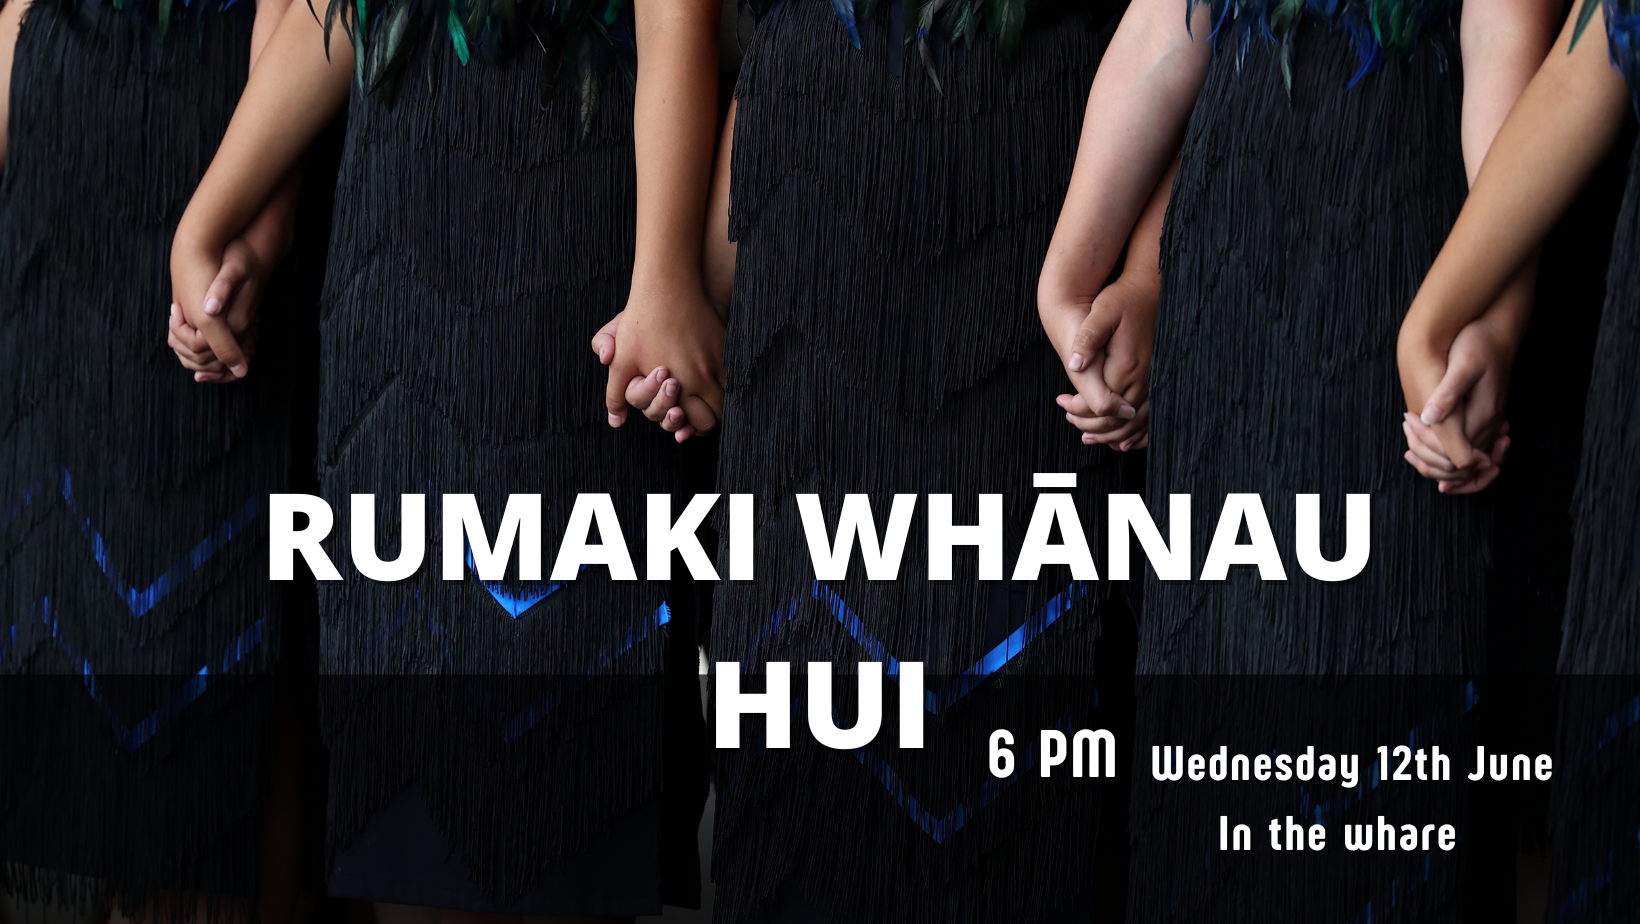 Upcoming Rumaki Whānau Hui